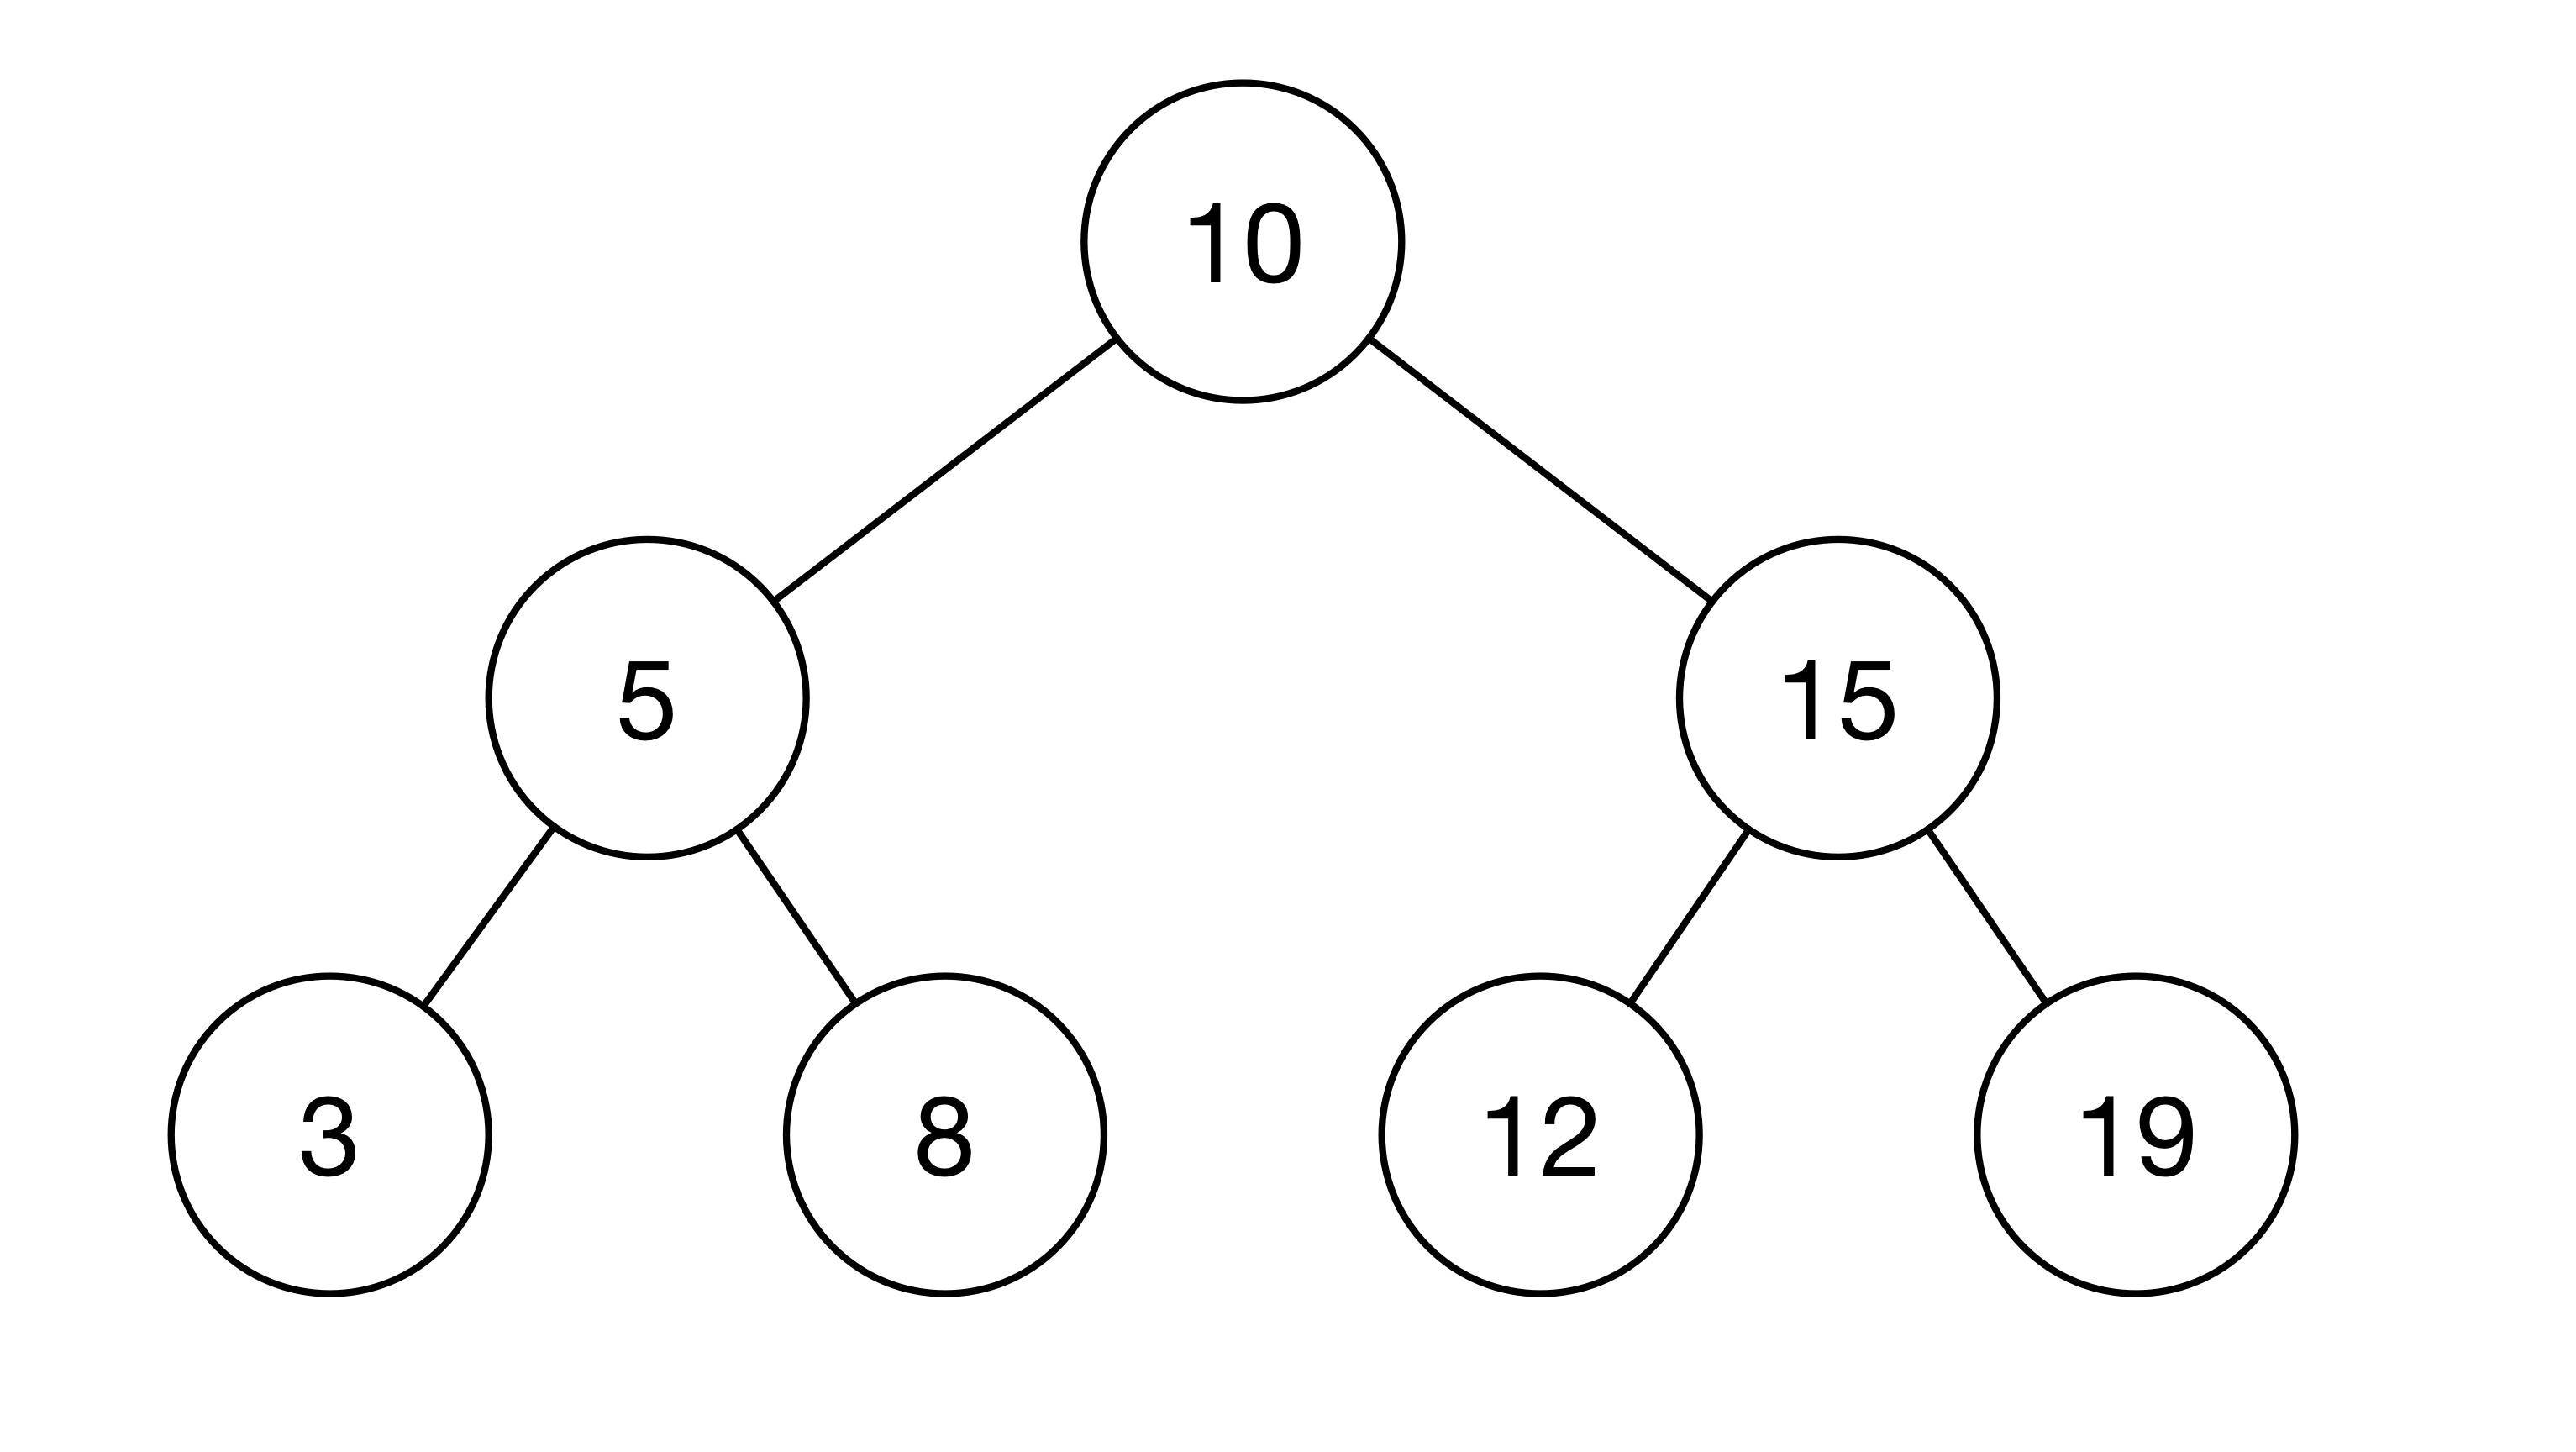 二叉排序树示例图